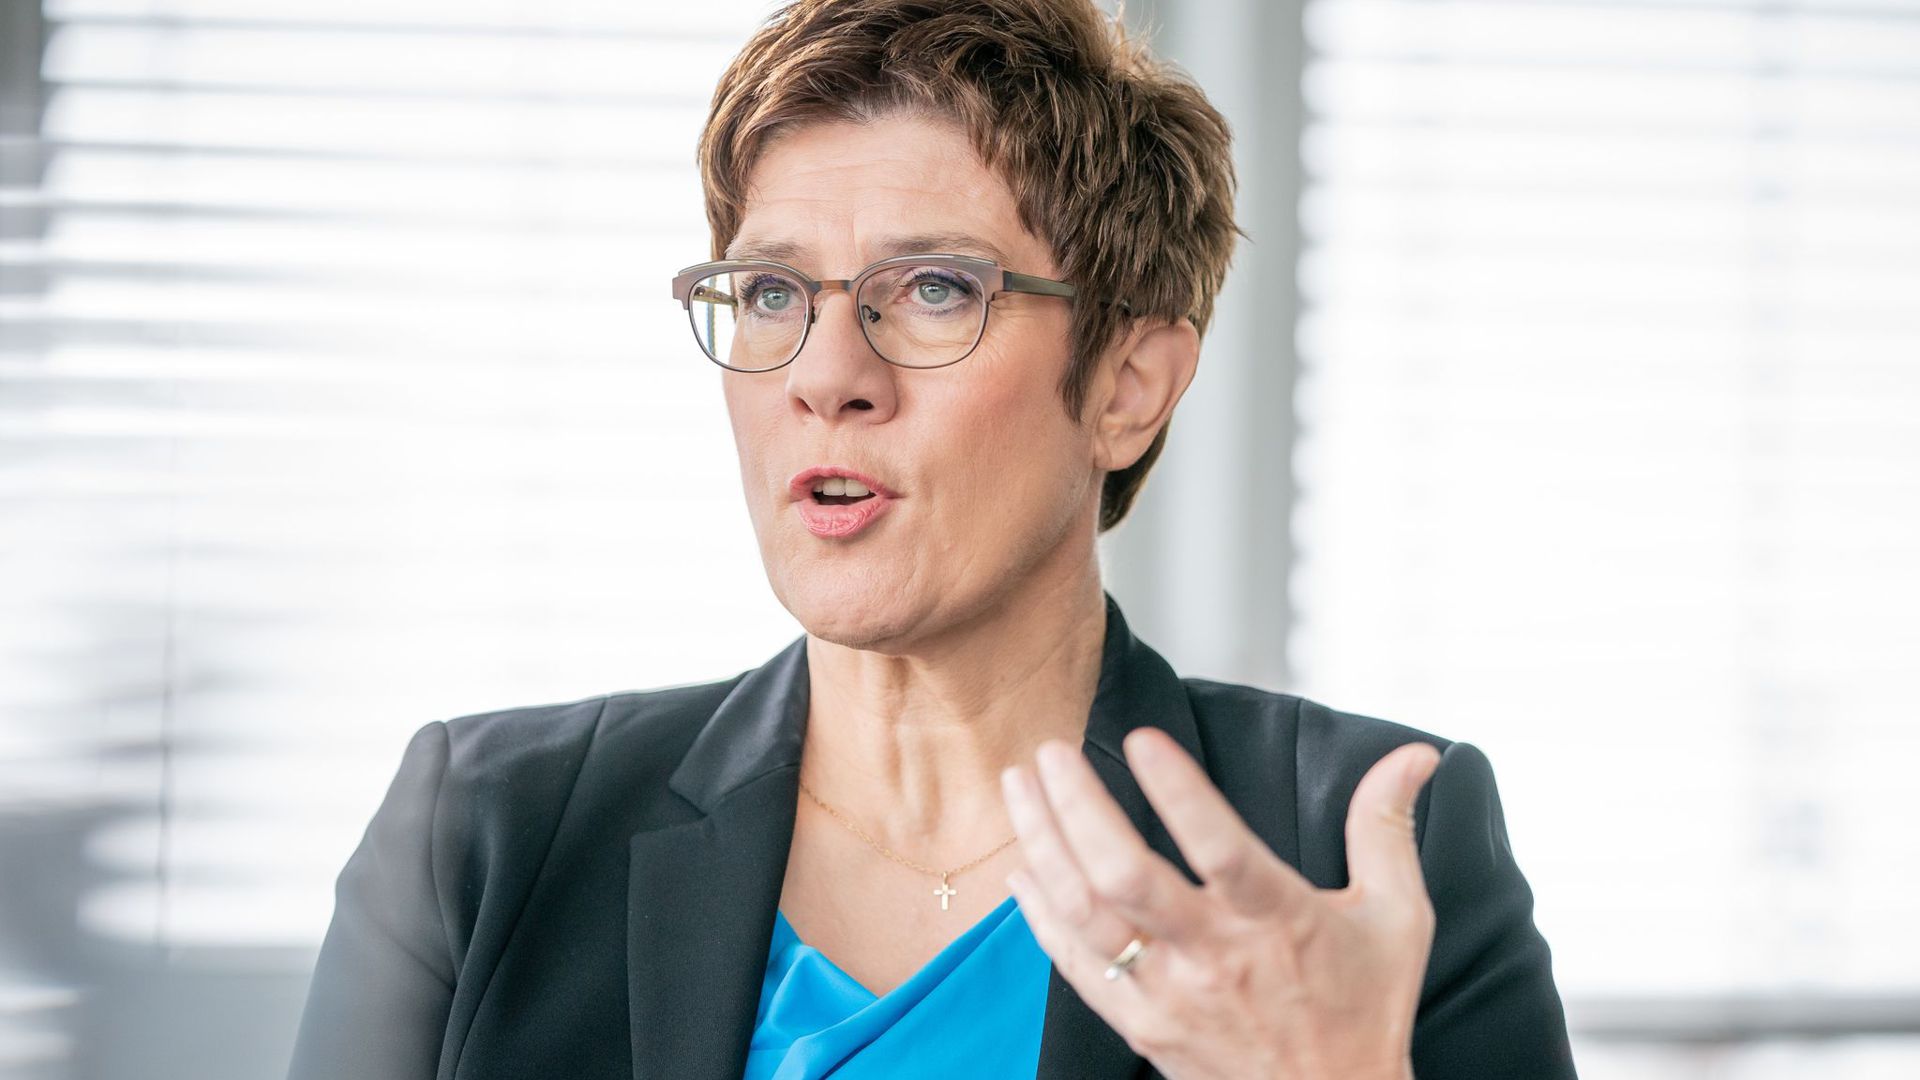 Ruft zu Fairness auf: Annegret Kramp-Karrenbauer, CDU-Bundesvorsitzende und Verteidigungsministerin.